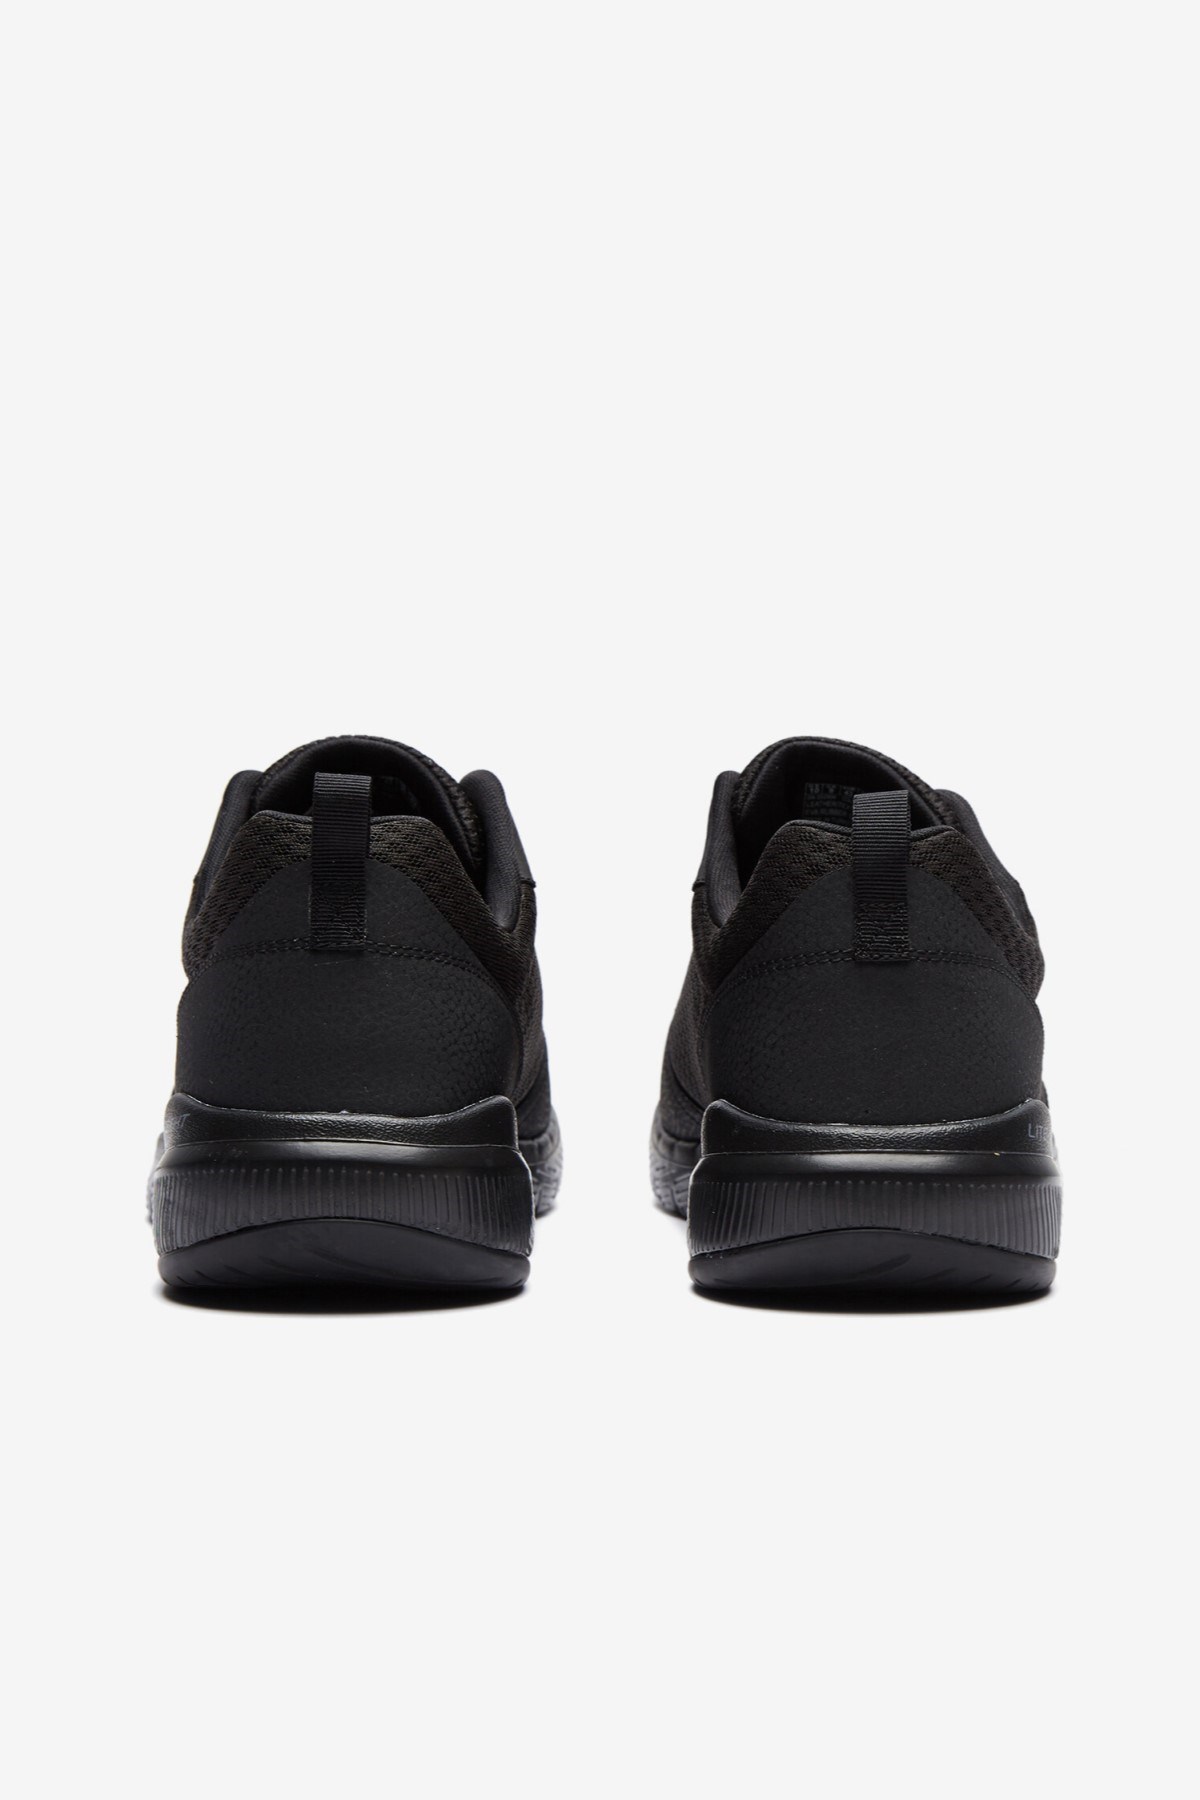 Skechers Erkek Ayakkabı S52954 Siyah